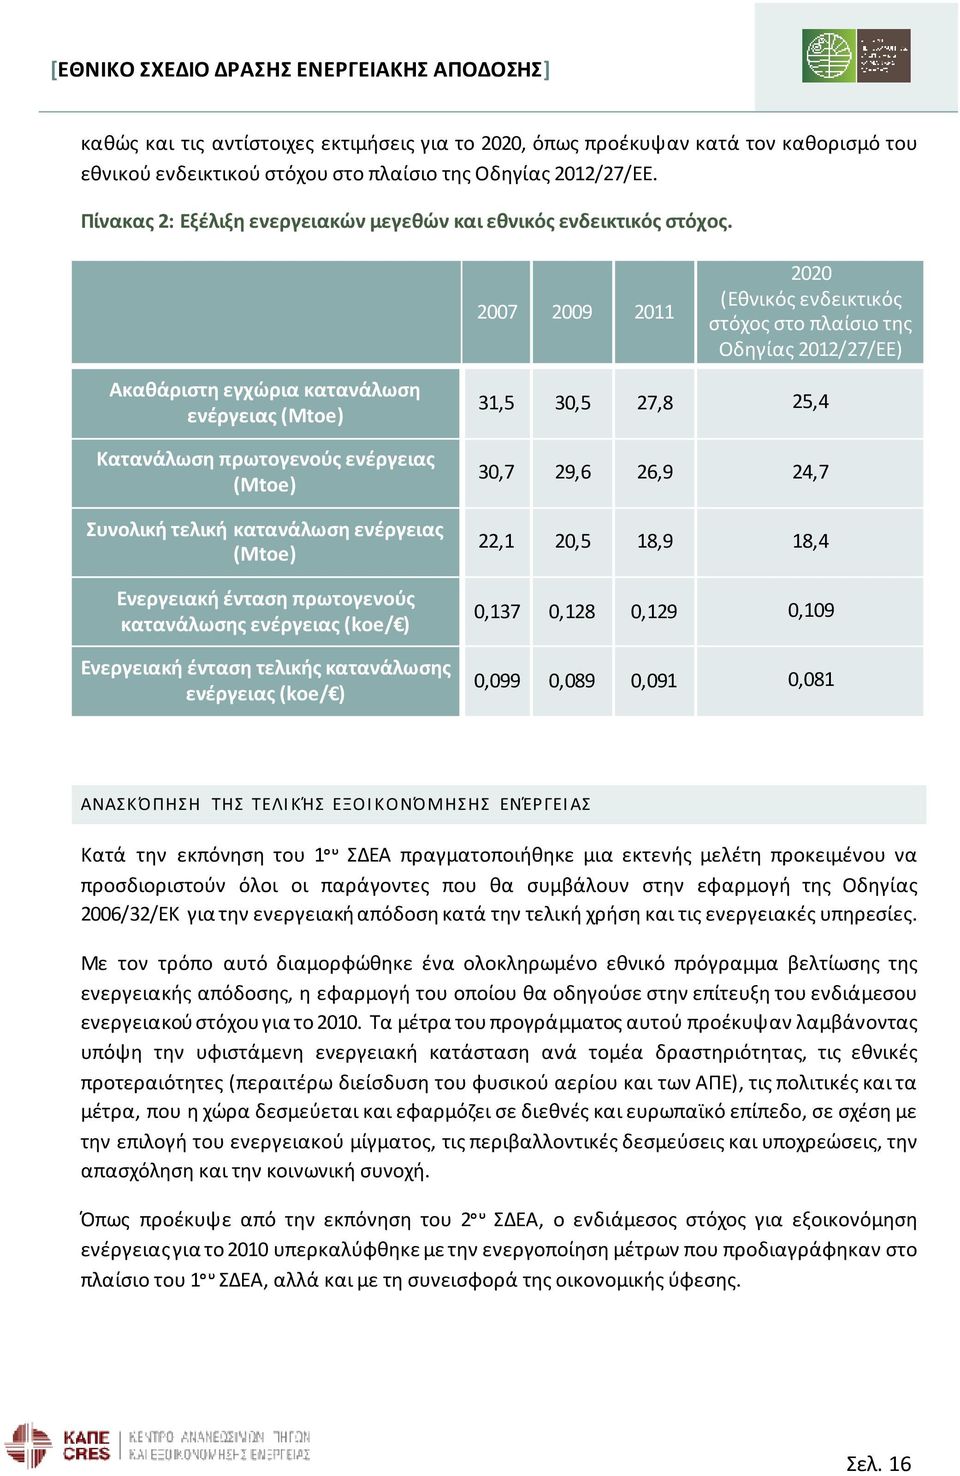 2007 2009 2011 2020 (Εθνικός ενδεικτικός στόχος στο πλαίσιο της Οδηγίας 2012/27/ΕΕ) Ακαθάριστη εγχώρια κατανάλωση ενέργειας (Μtoe) Κατανάλωση πρωτογενούς ενέργειας (Μtoe) Συνολική τελική κατανάλωση